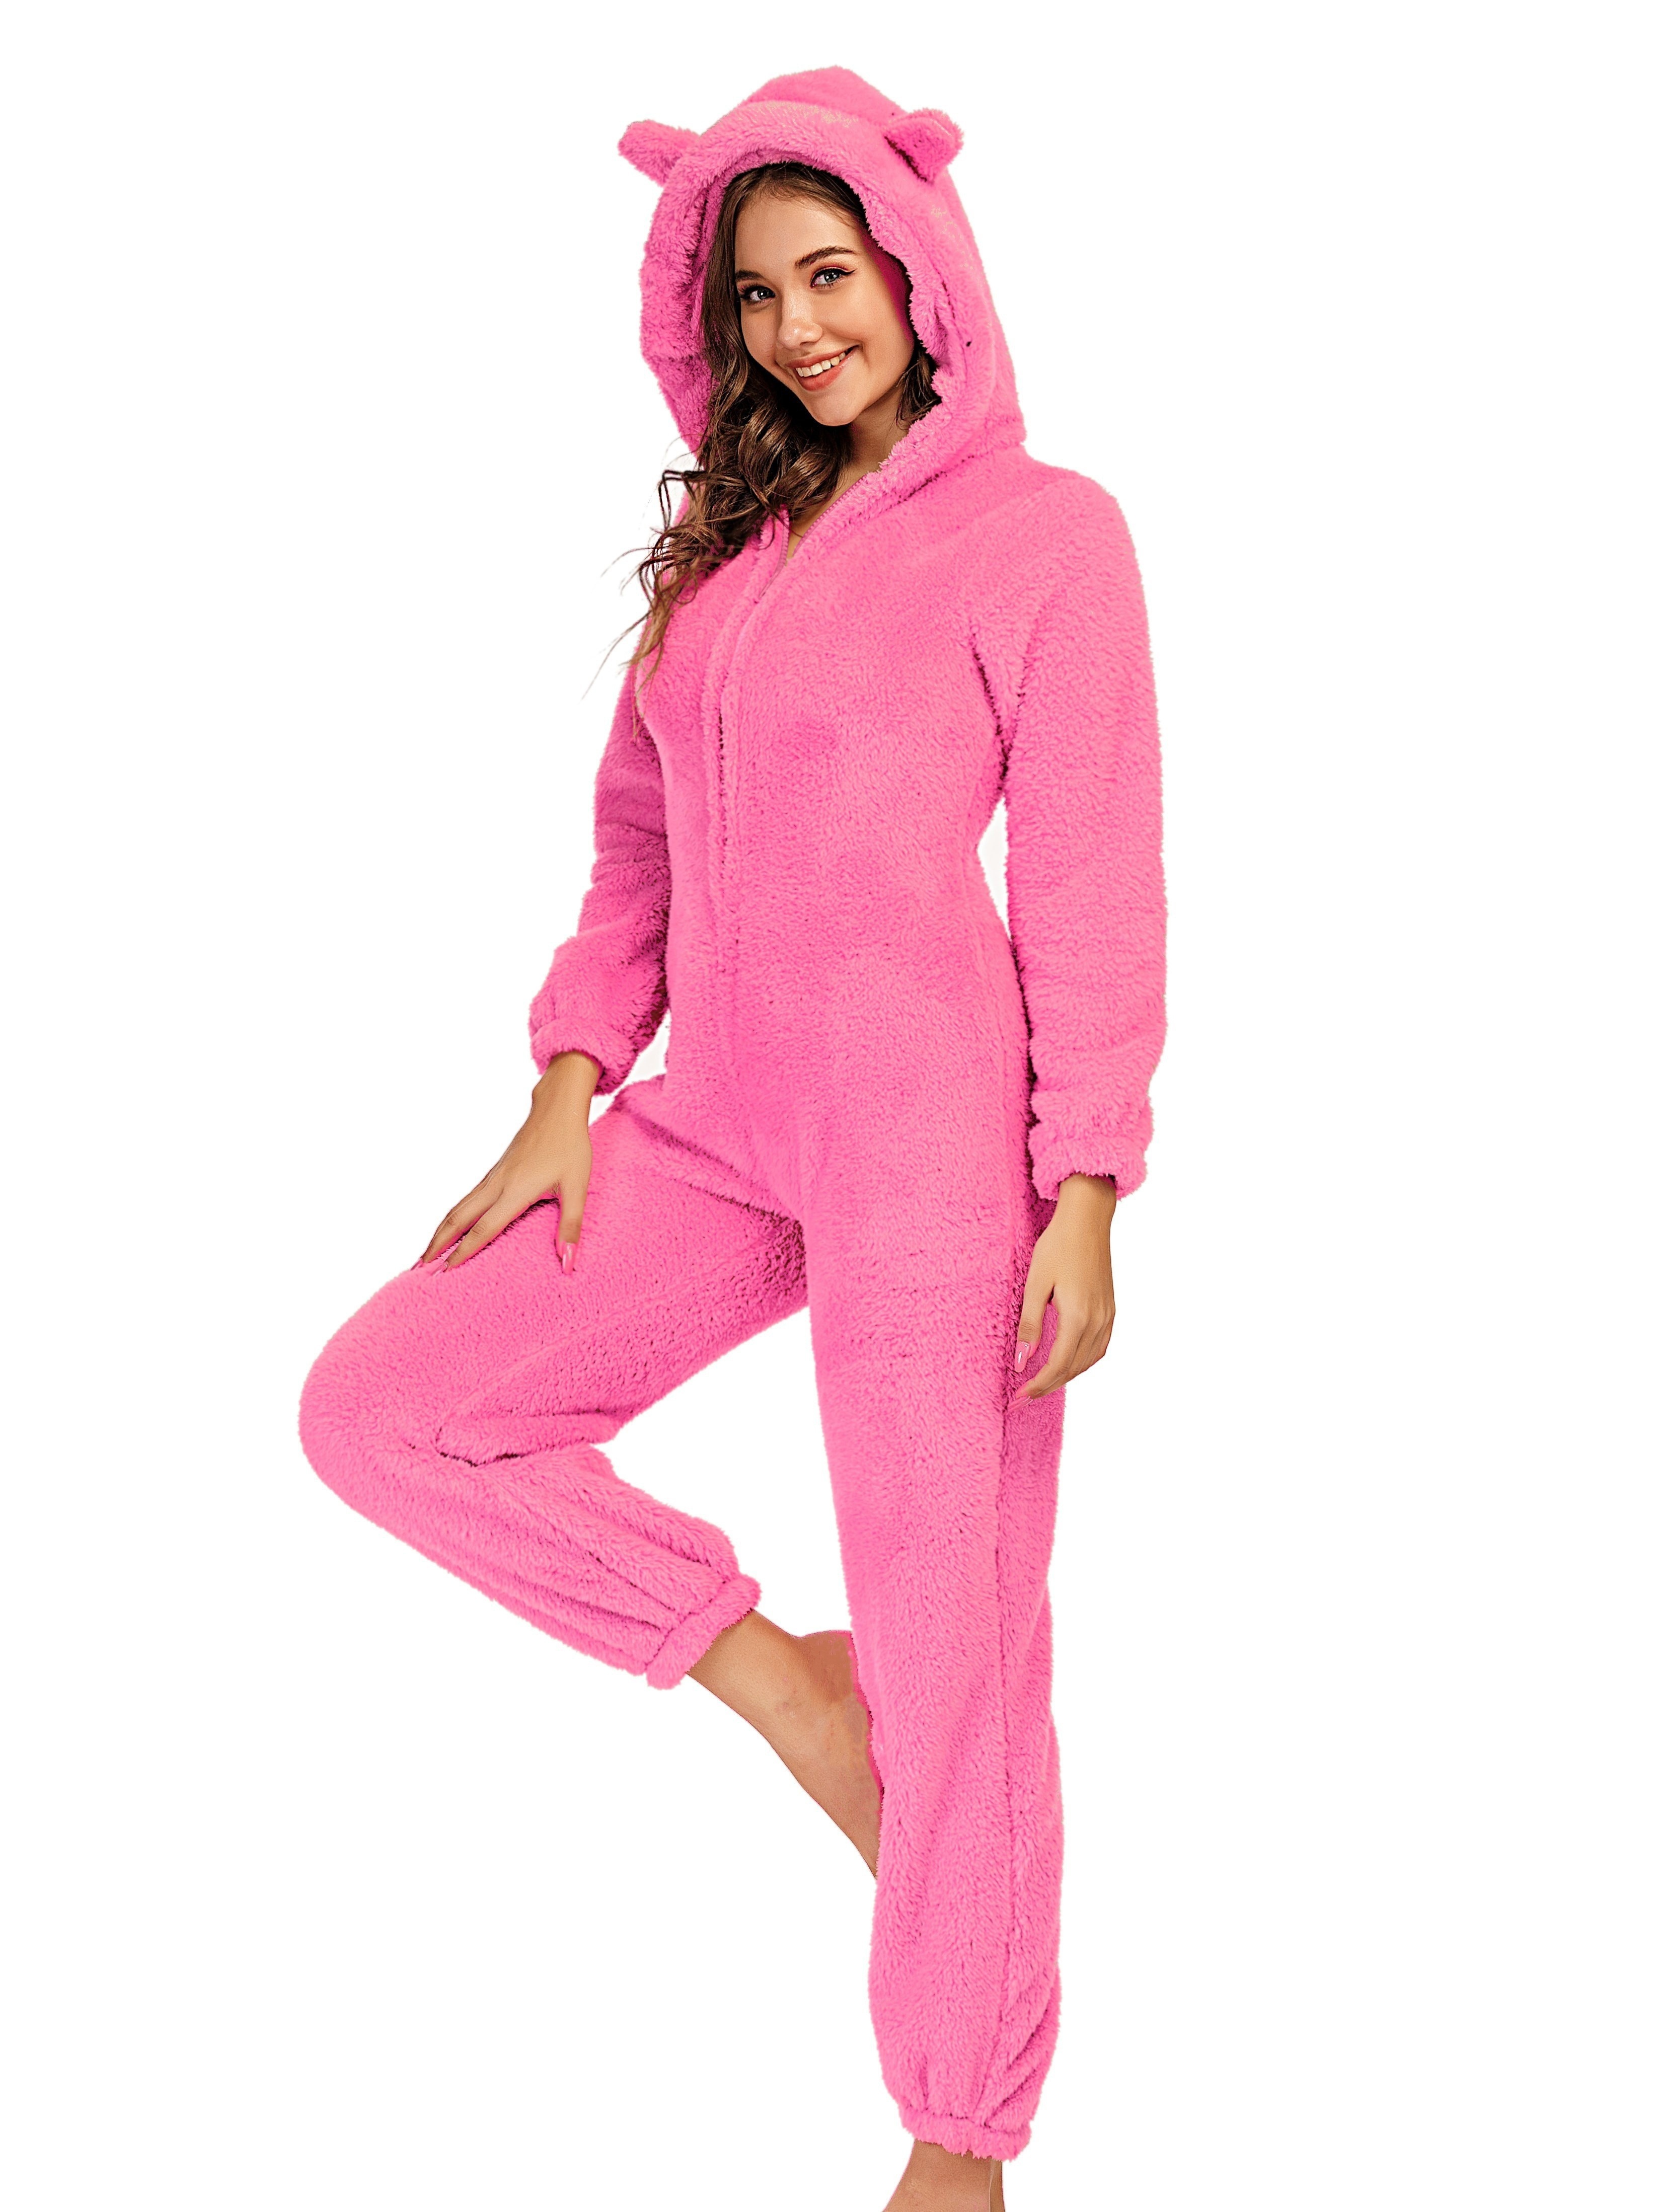 Bear Pattern Fuzzy Pajama Jumpsuit For Music Festival, Long Sleeve Hooded  Zip Pajamas, Women's Lingerie & Sleepwear